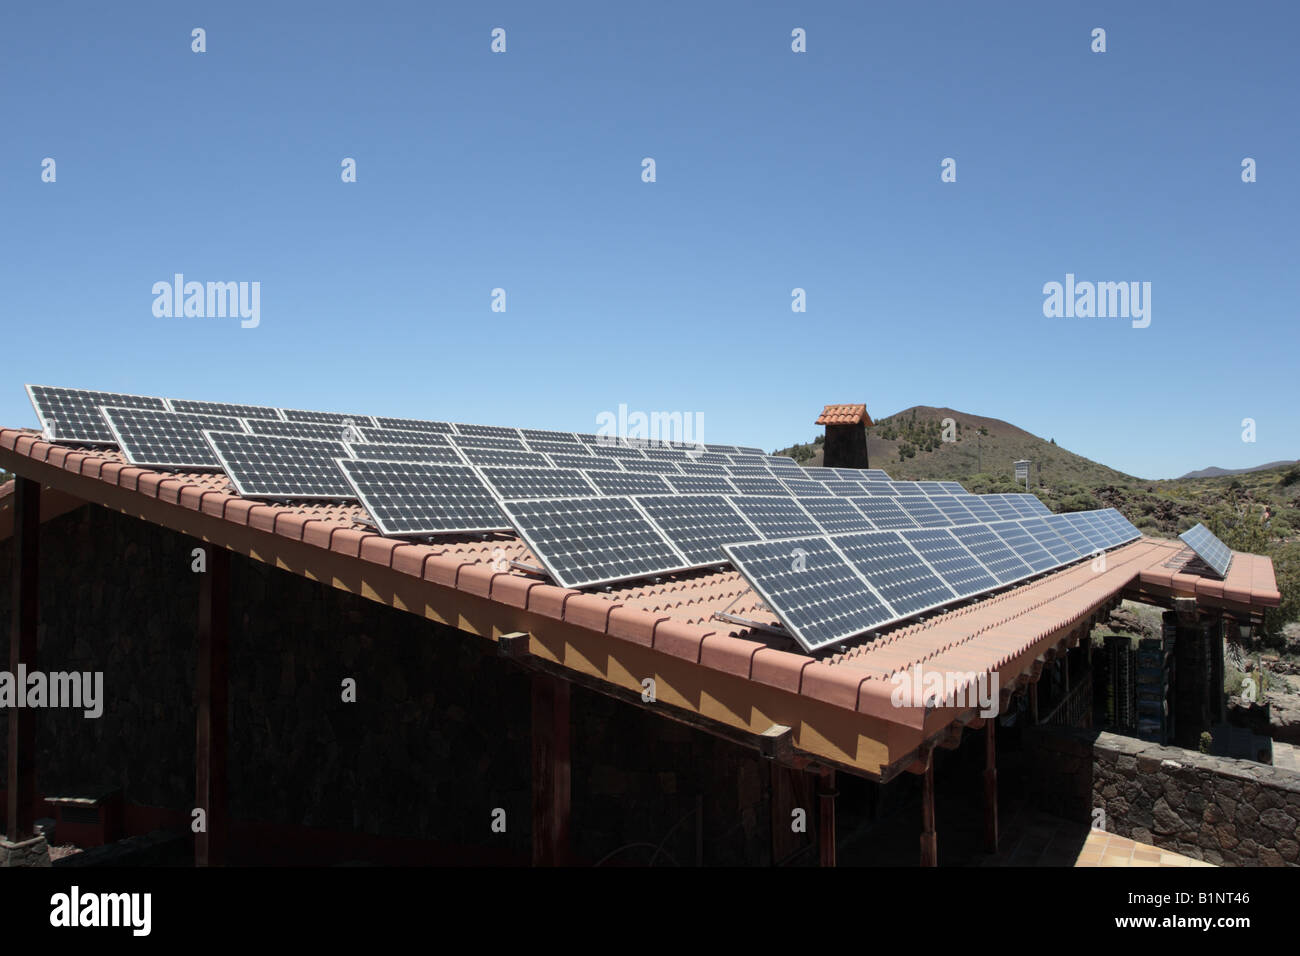 Photo Voltaic pannelli solari sul tetto del centro visitatori di Las Canadas del Teide Foto Stock